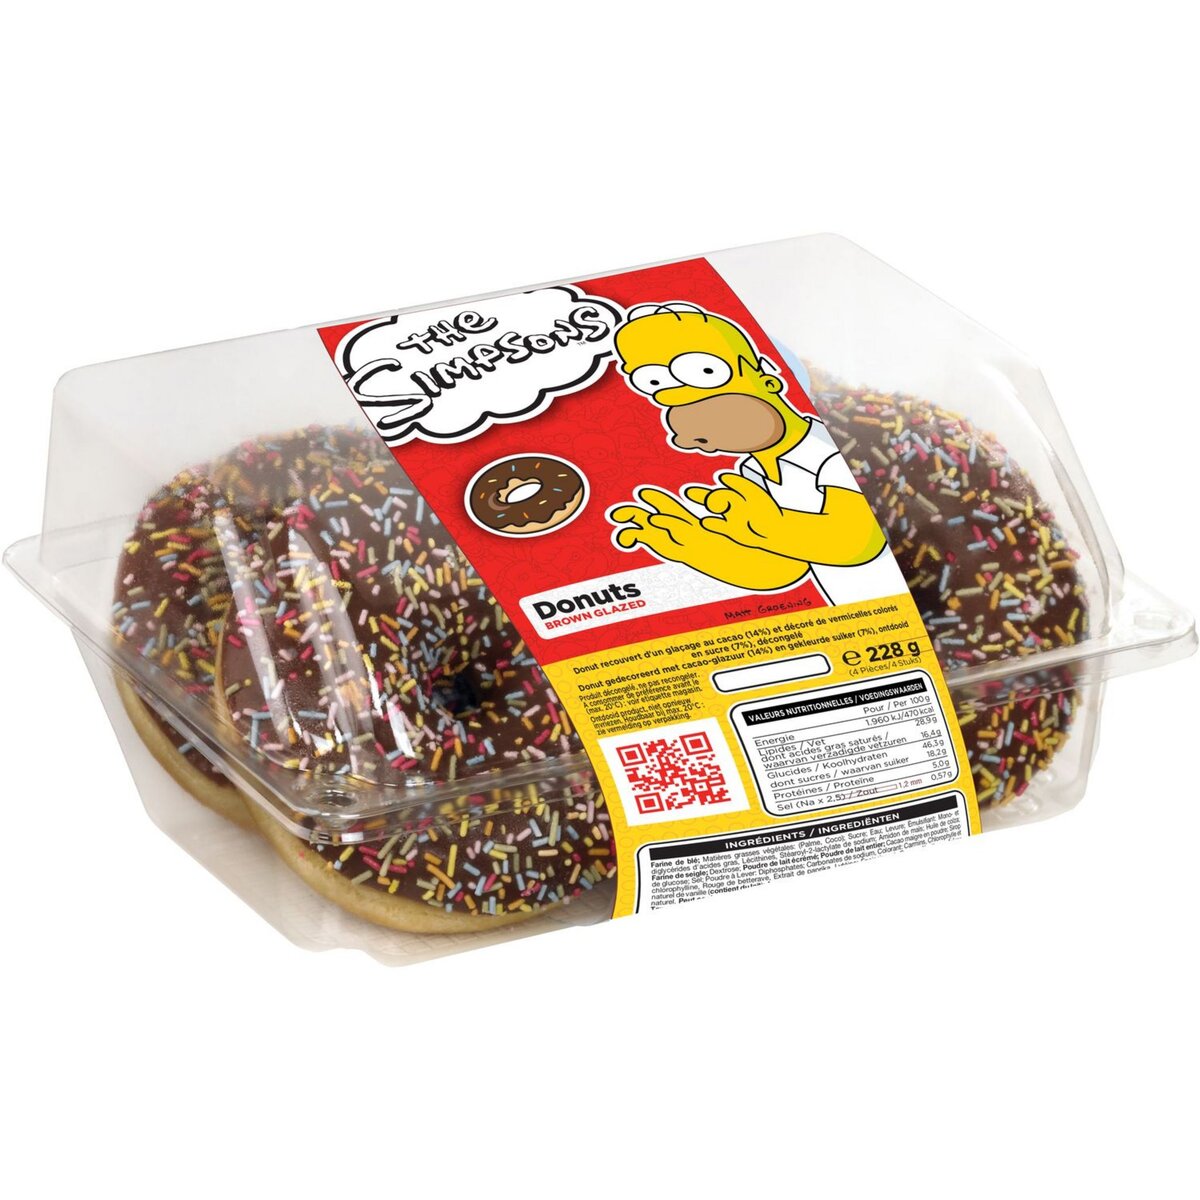 THE SIMPSONS Donuts recouvert d'un glaçage au cacao et vermicelles colorés en sucre 4 pièces 228g